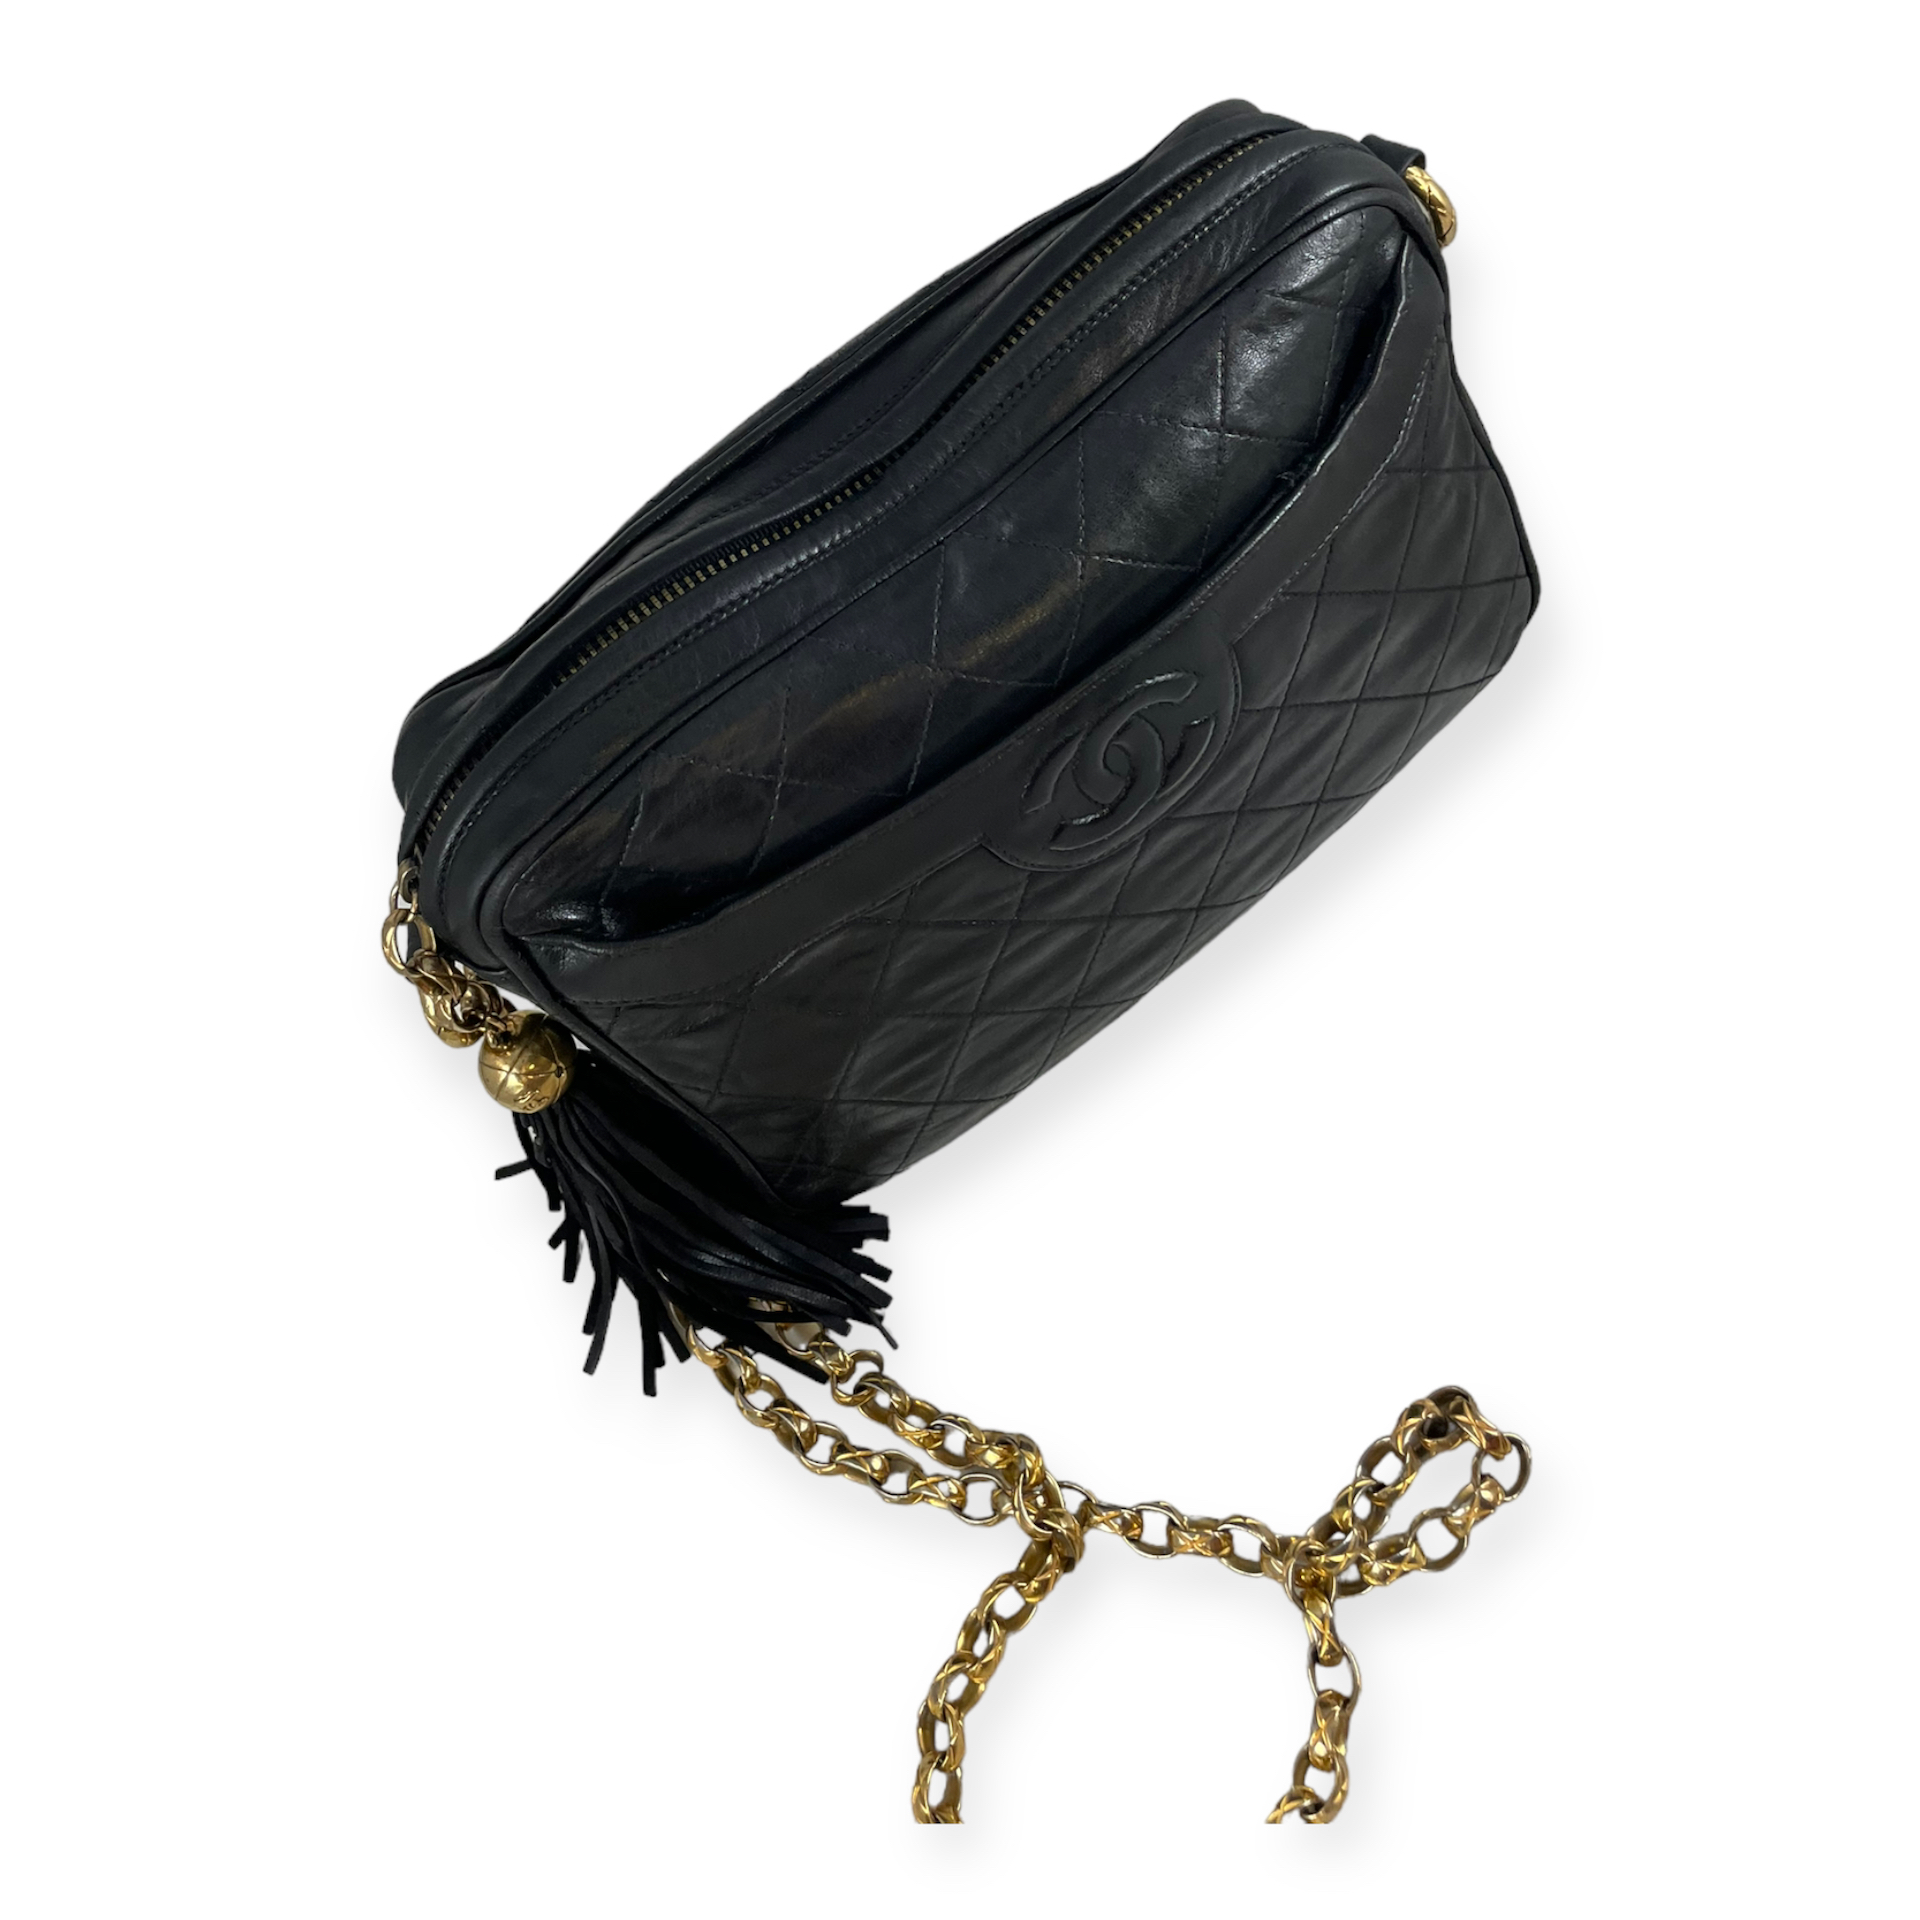 Chanel Vintage Tassel Camera Bag in Black